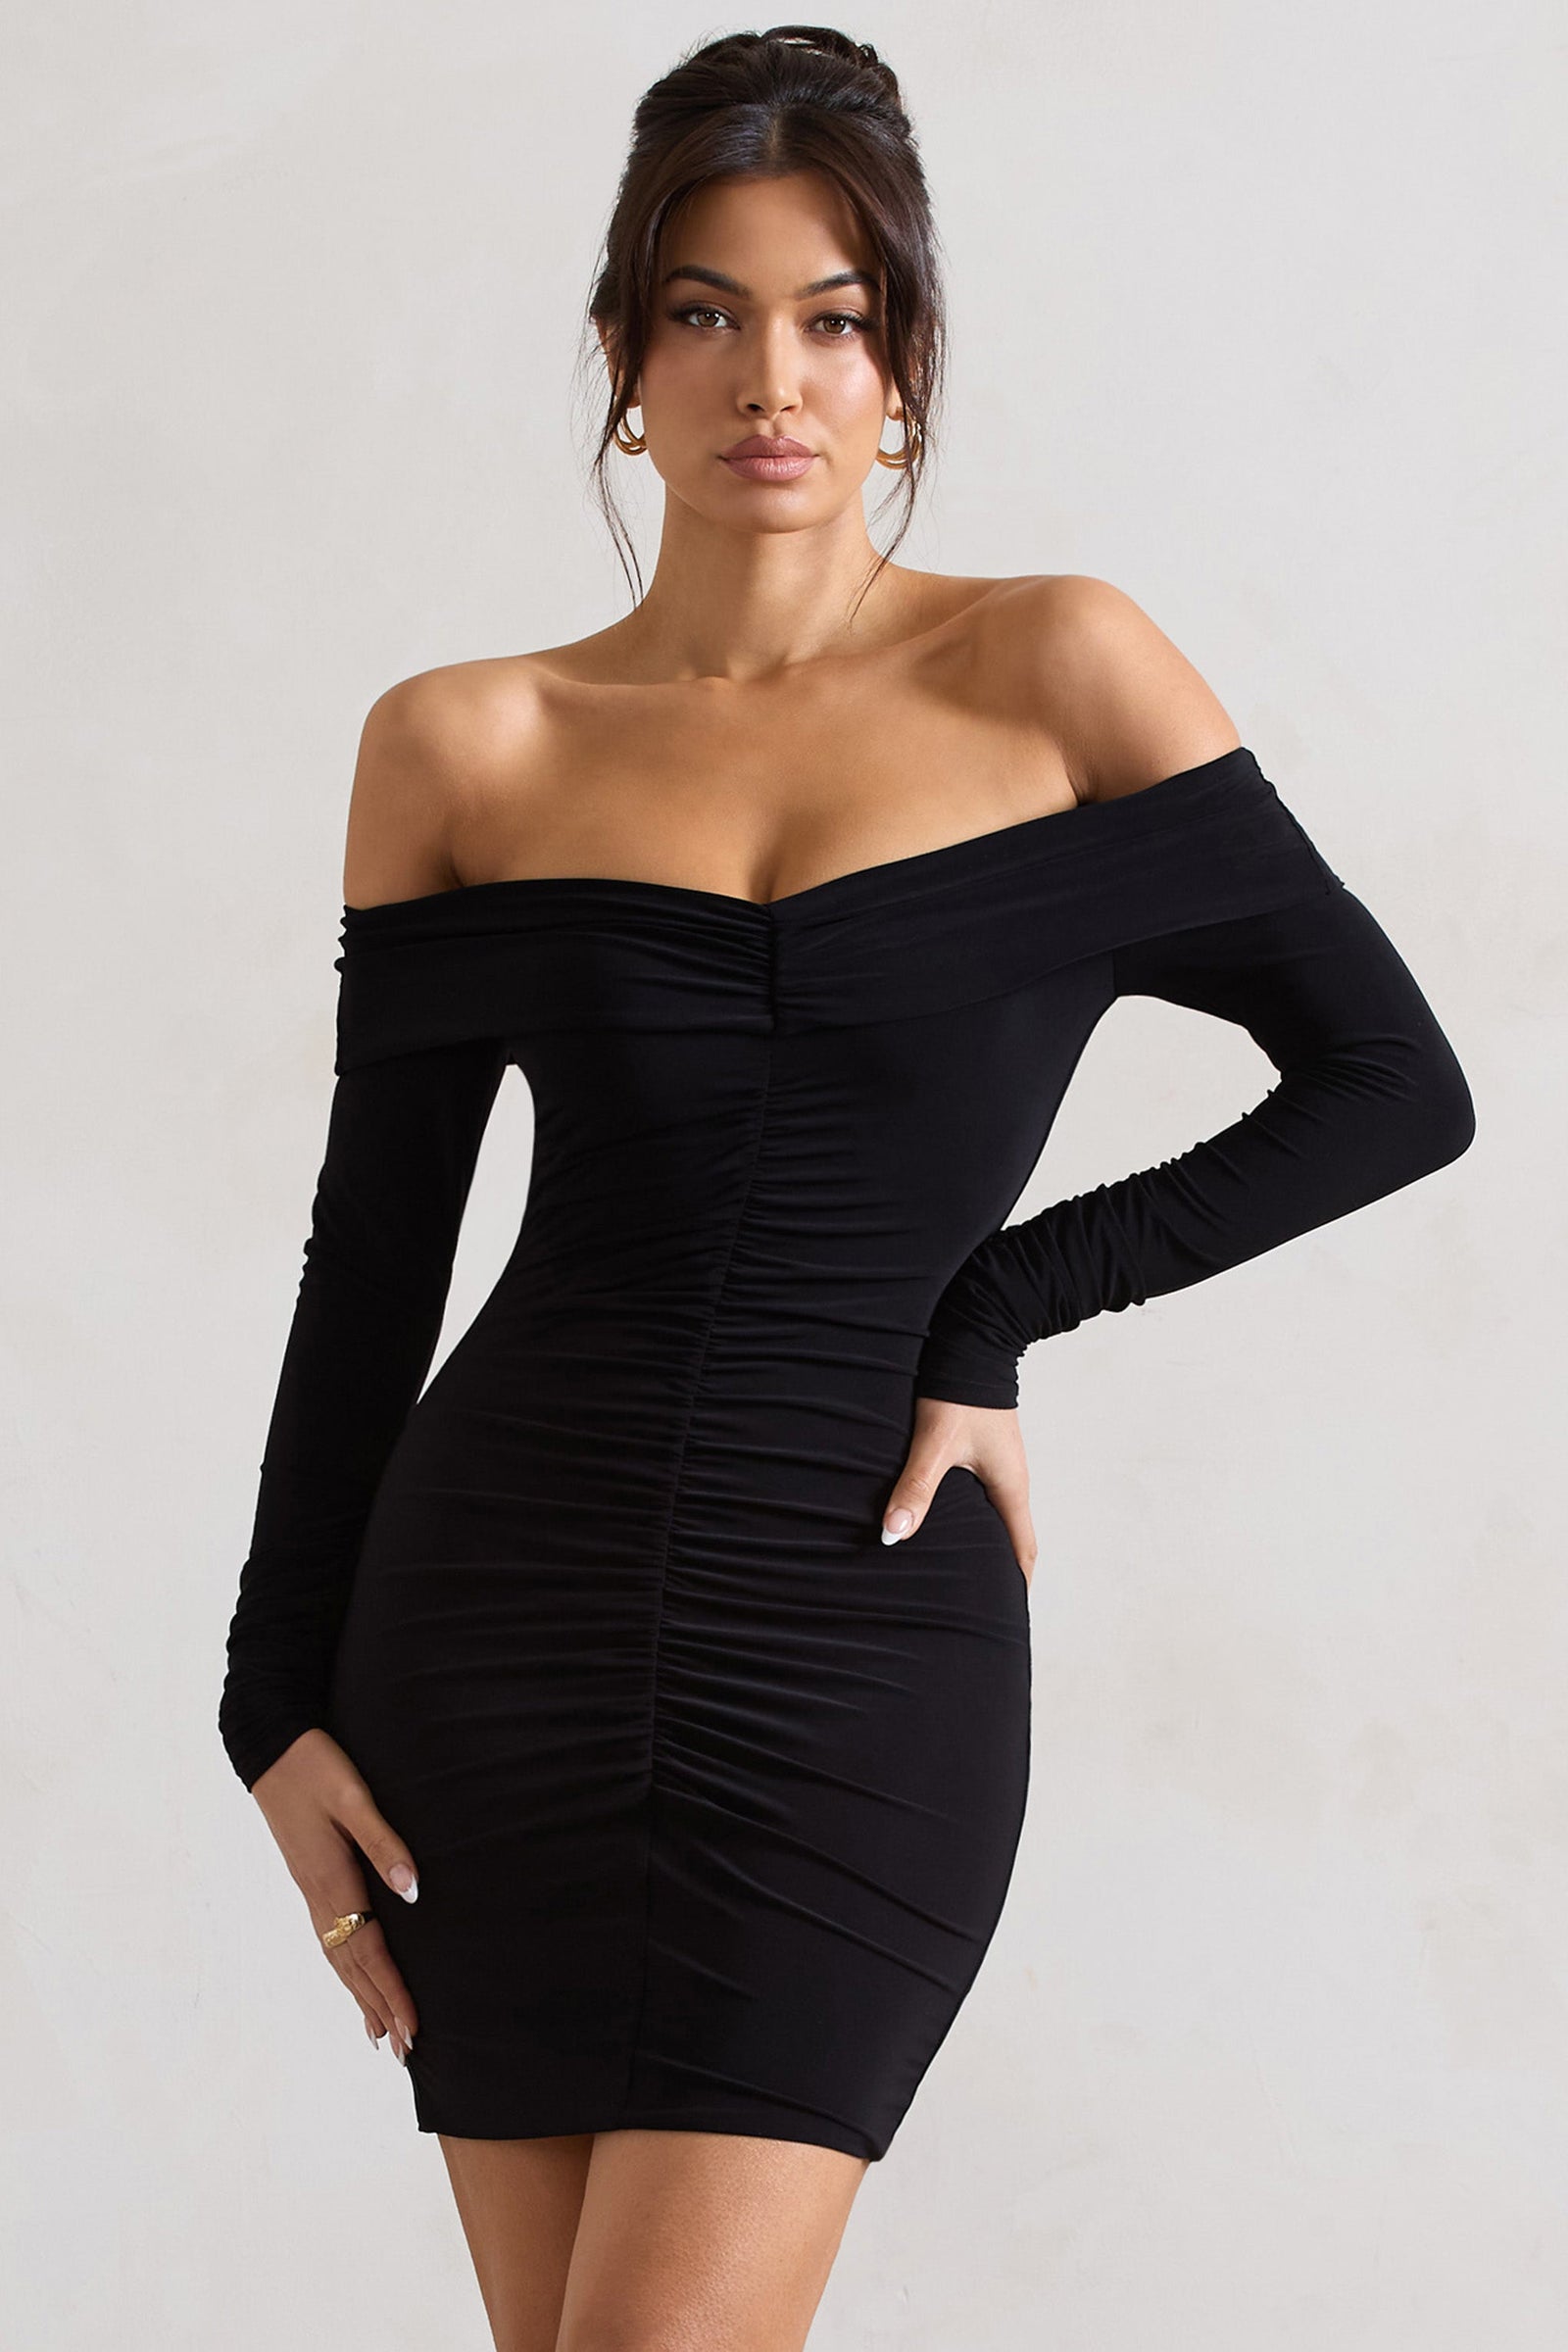 Gorgeous Black Lace Dress - Strapless Dress - Bodycon Dress - LBD